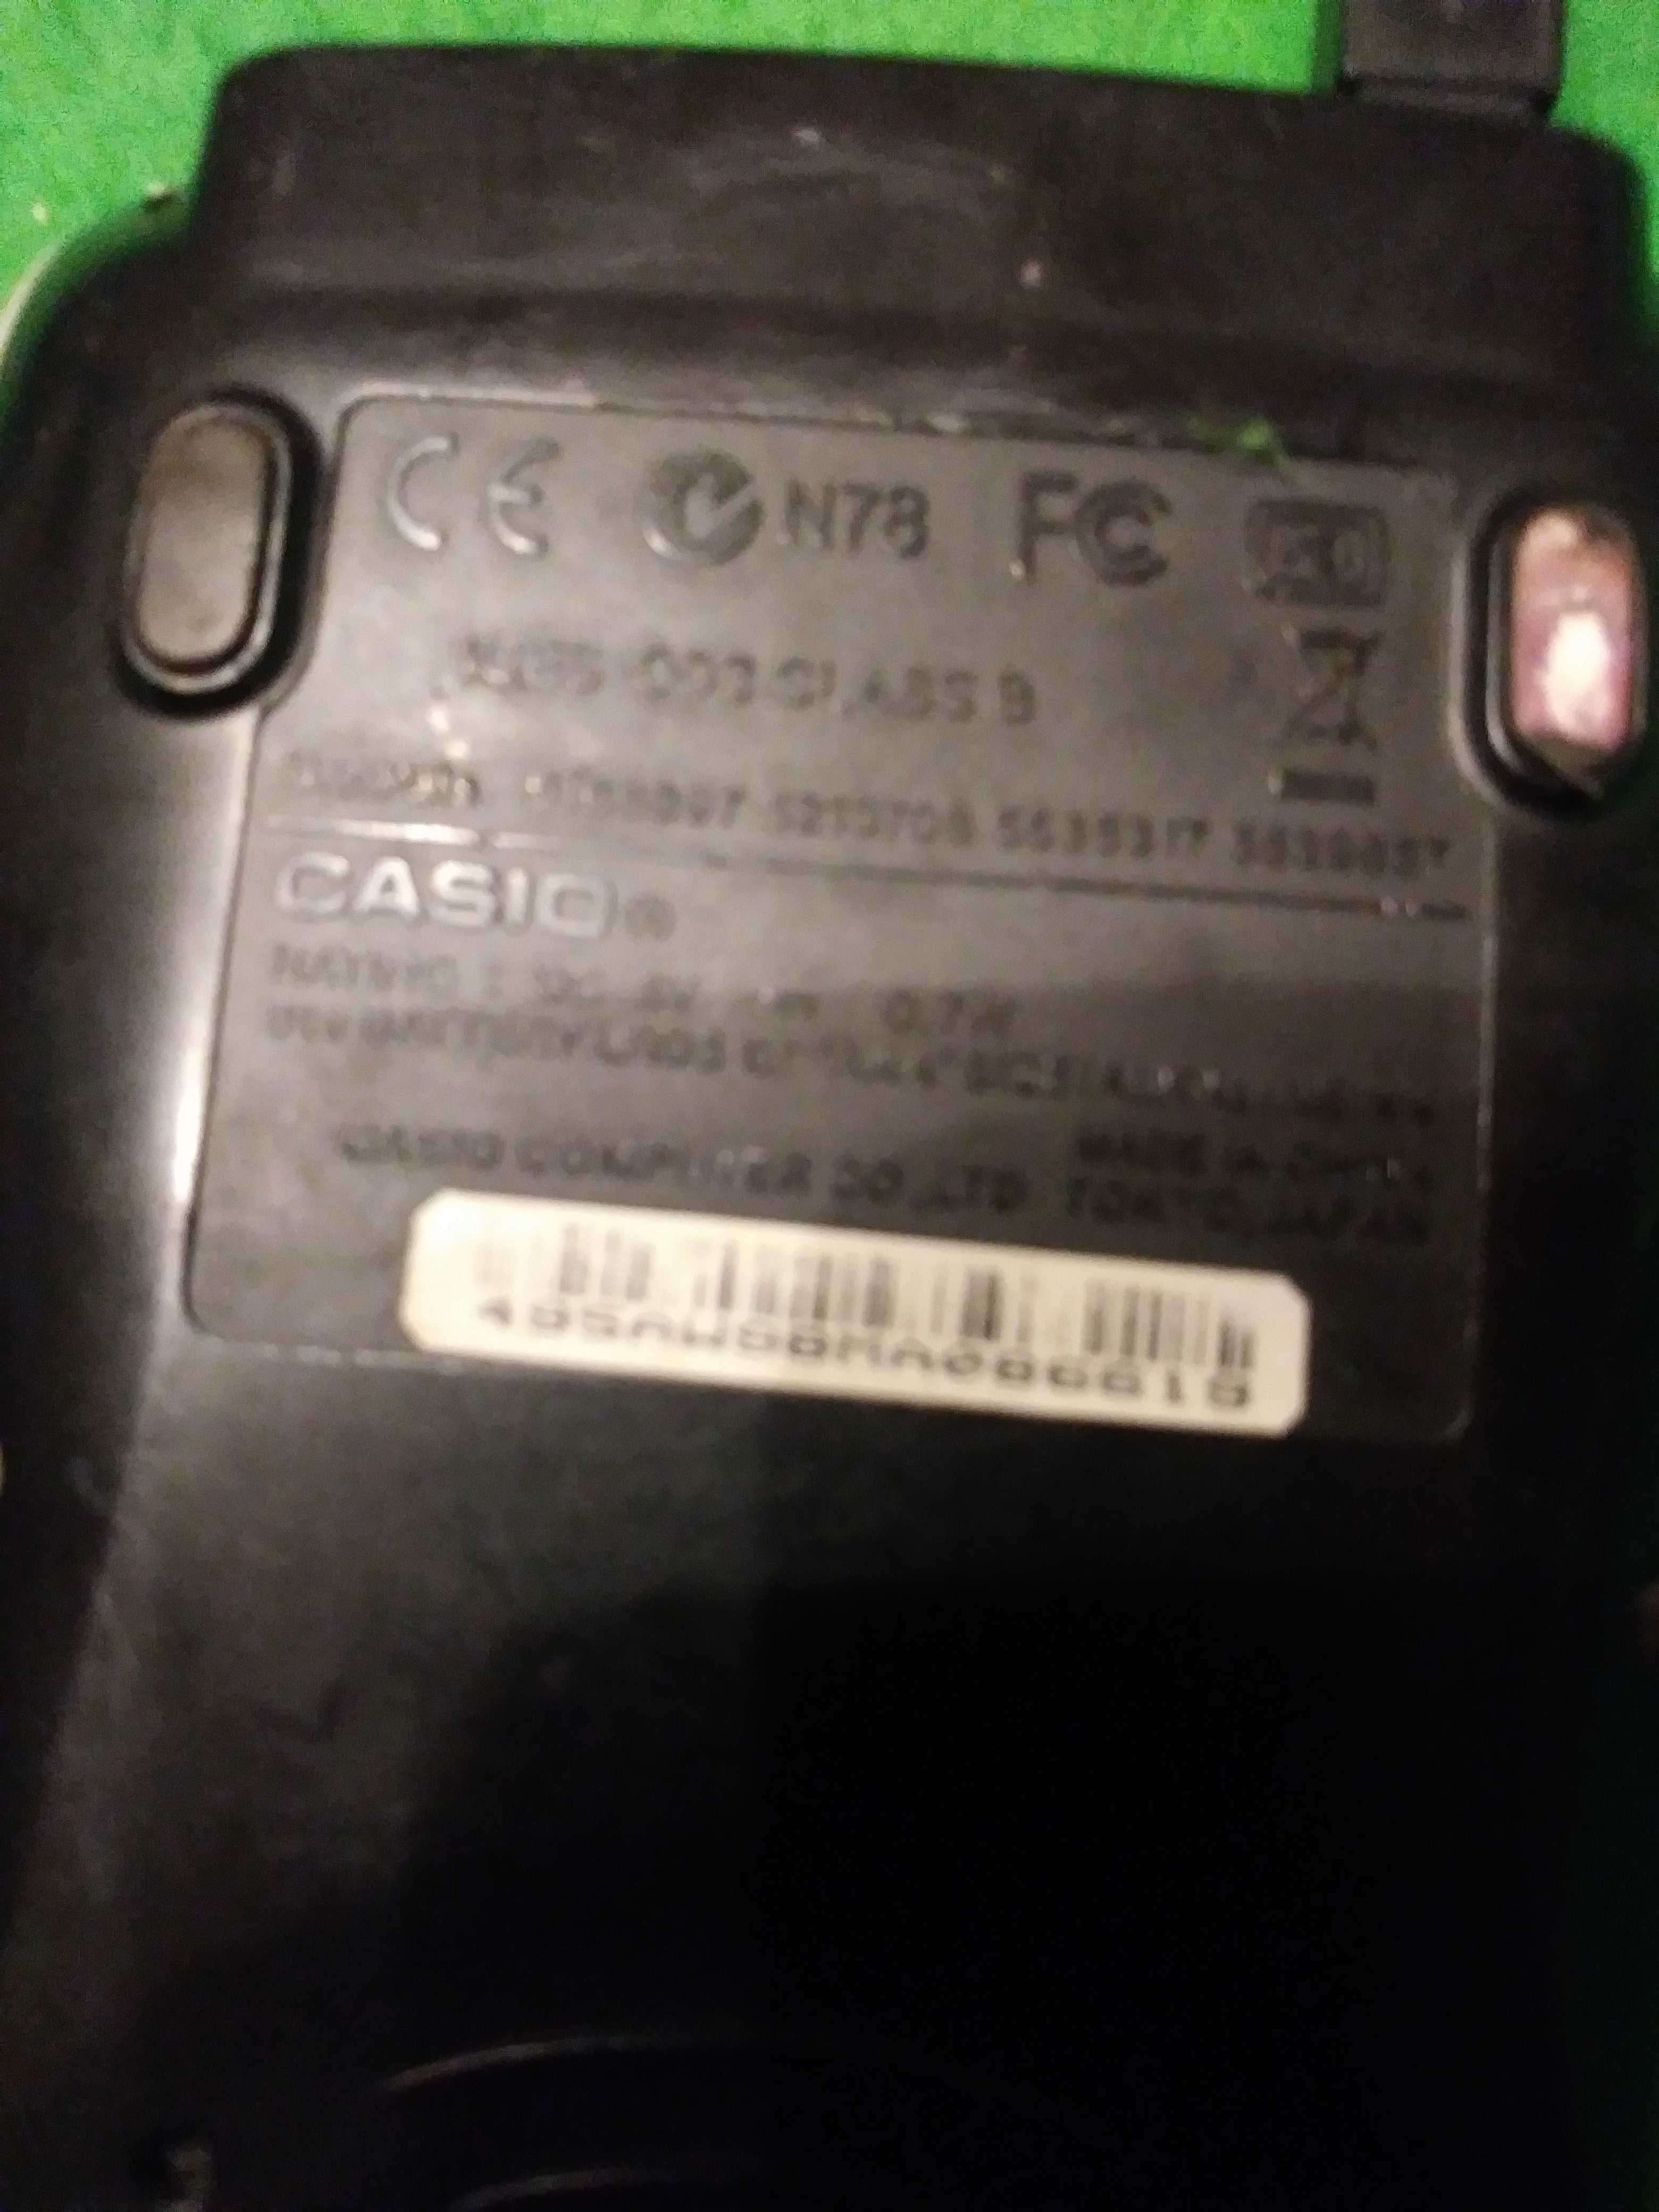 Kalkulator graficzny Casio fx-9860GII